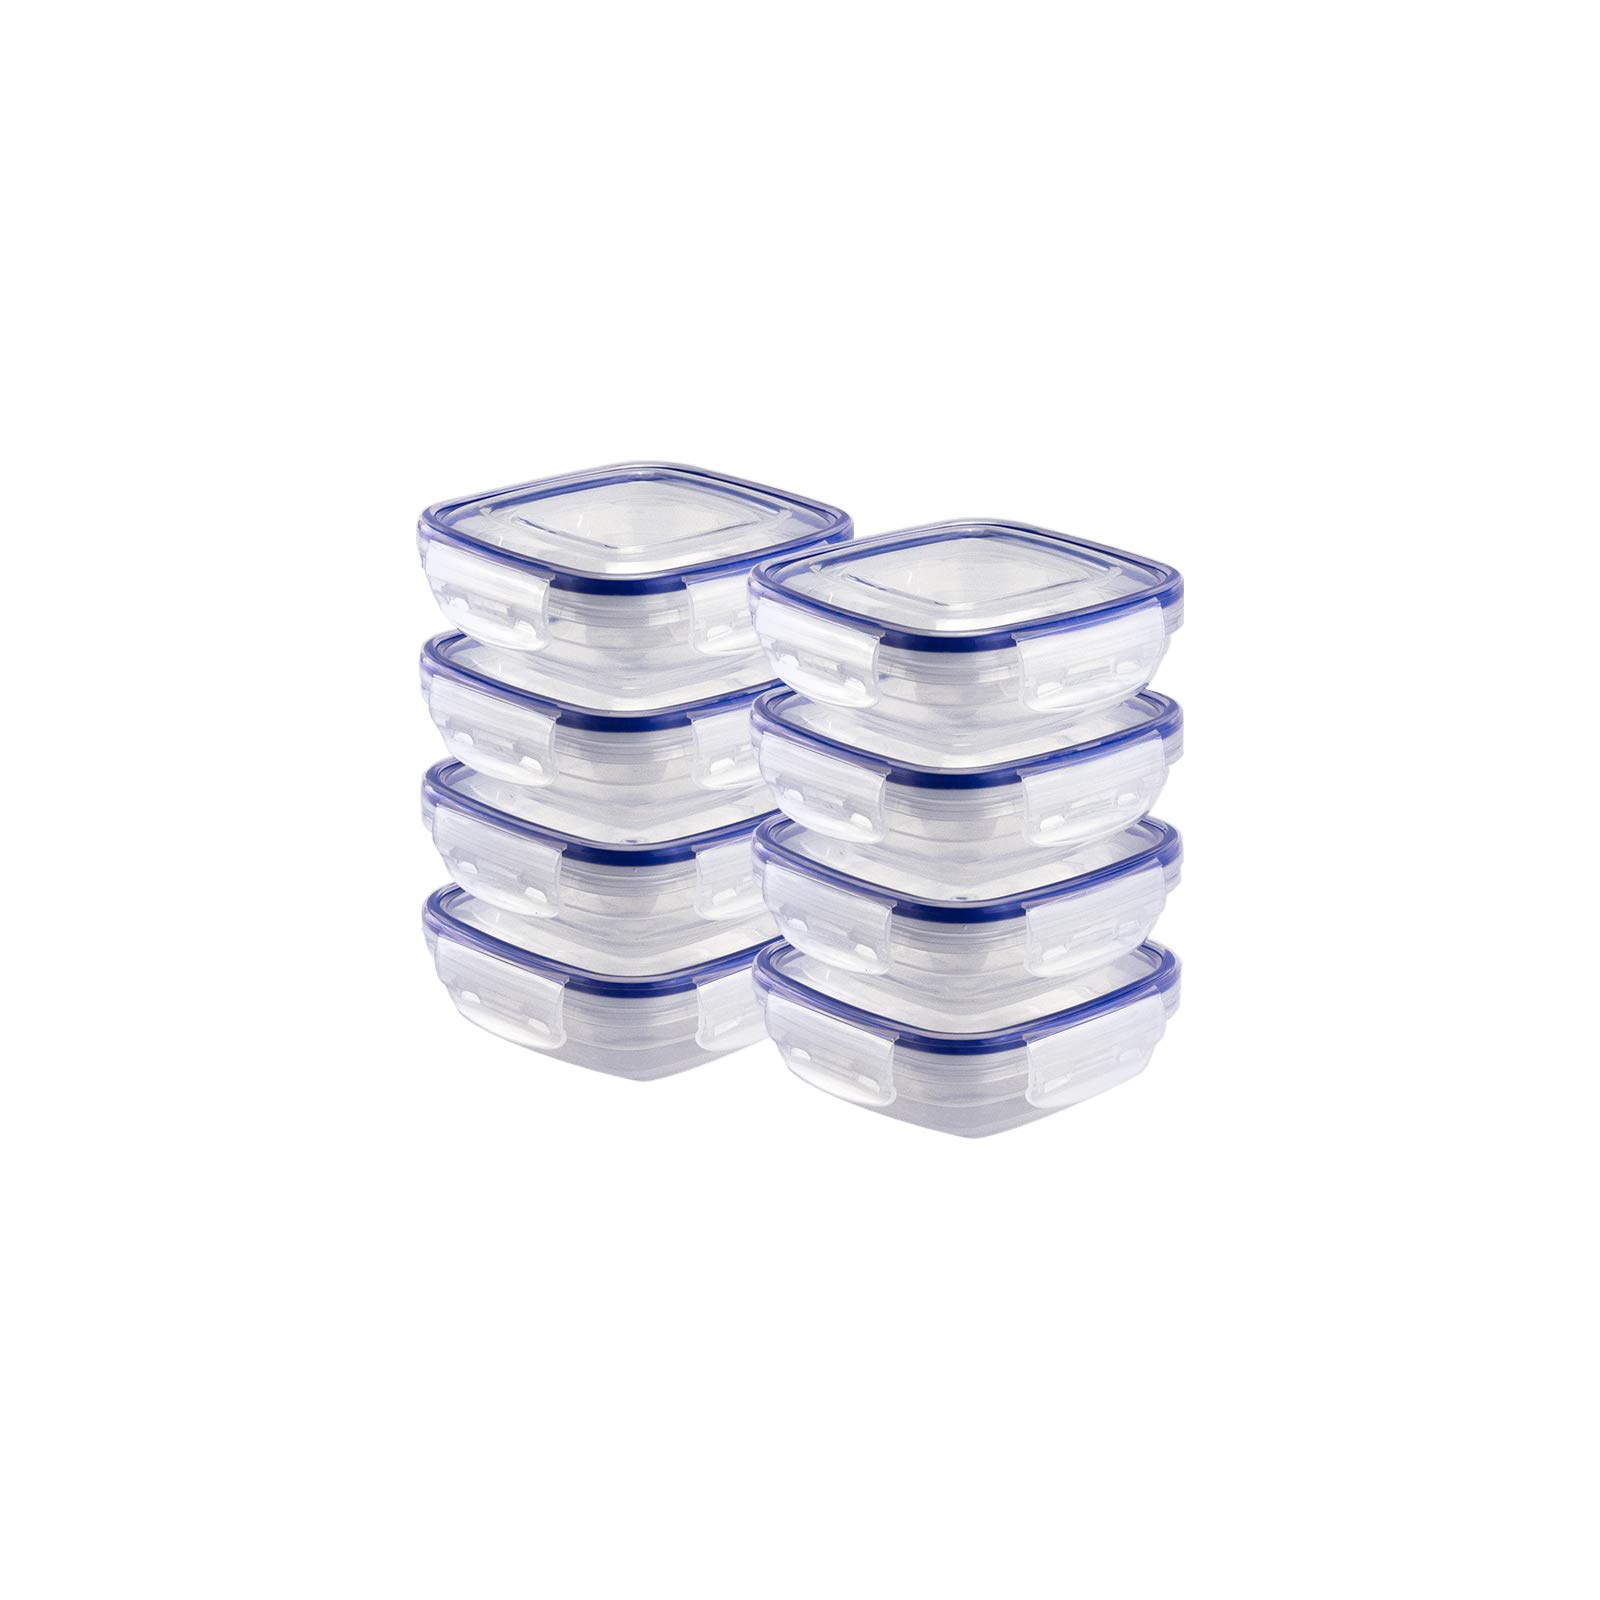 Grizzly Kunststoff Frischhaltedosen Set, 8x Vorratsdosen mit Deckel, flach, quadratisch, stapelbar, mikrowellen- und spülmaschinenfest